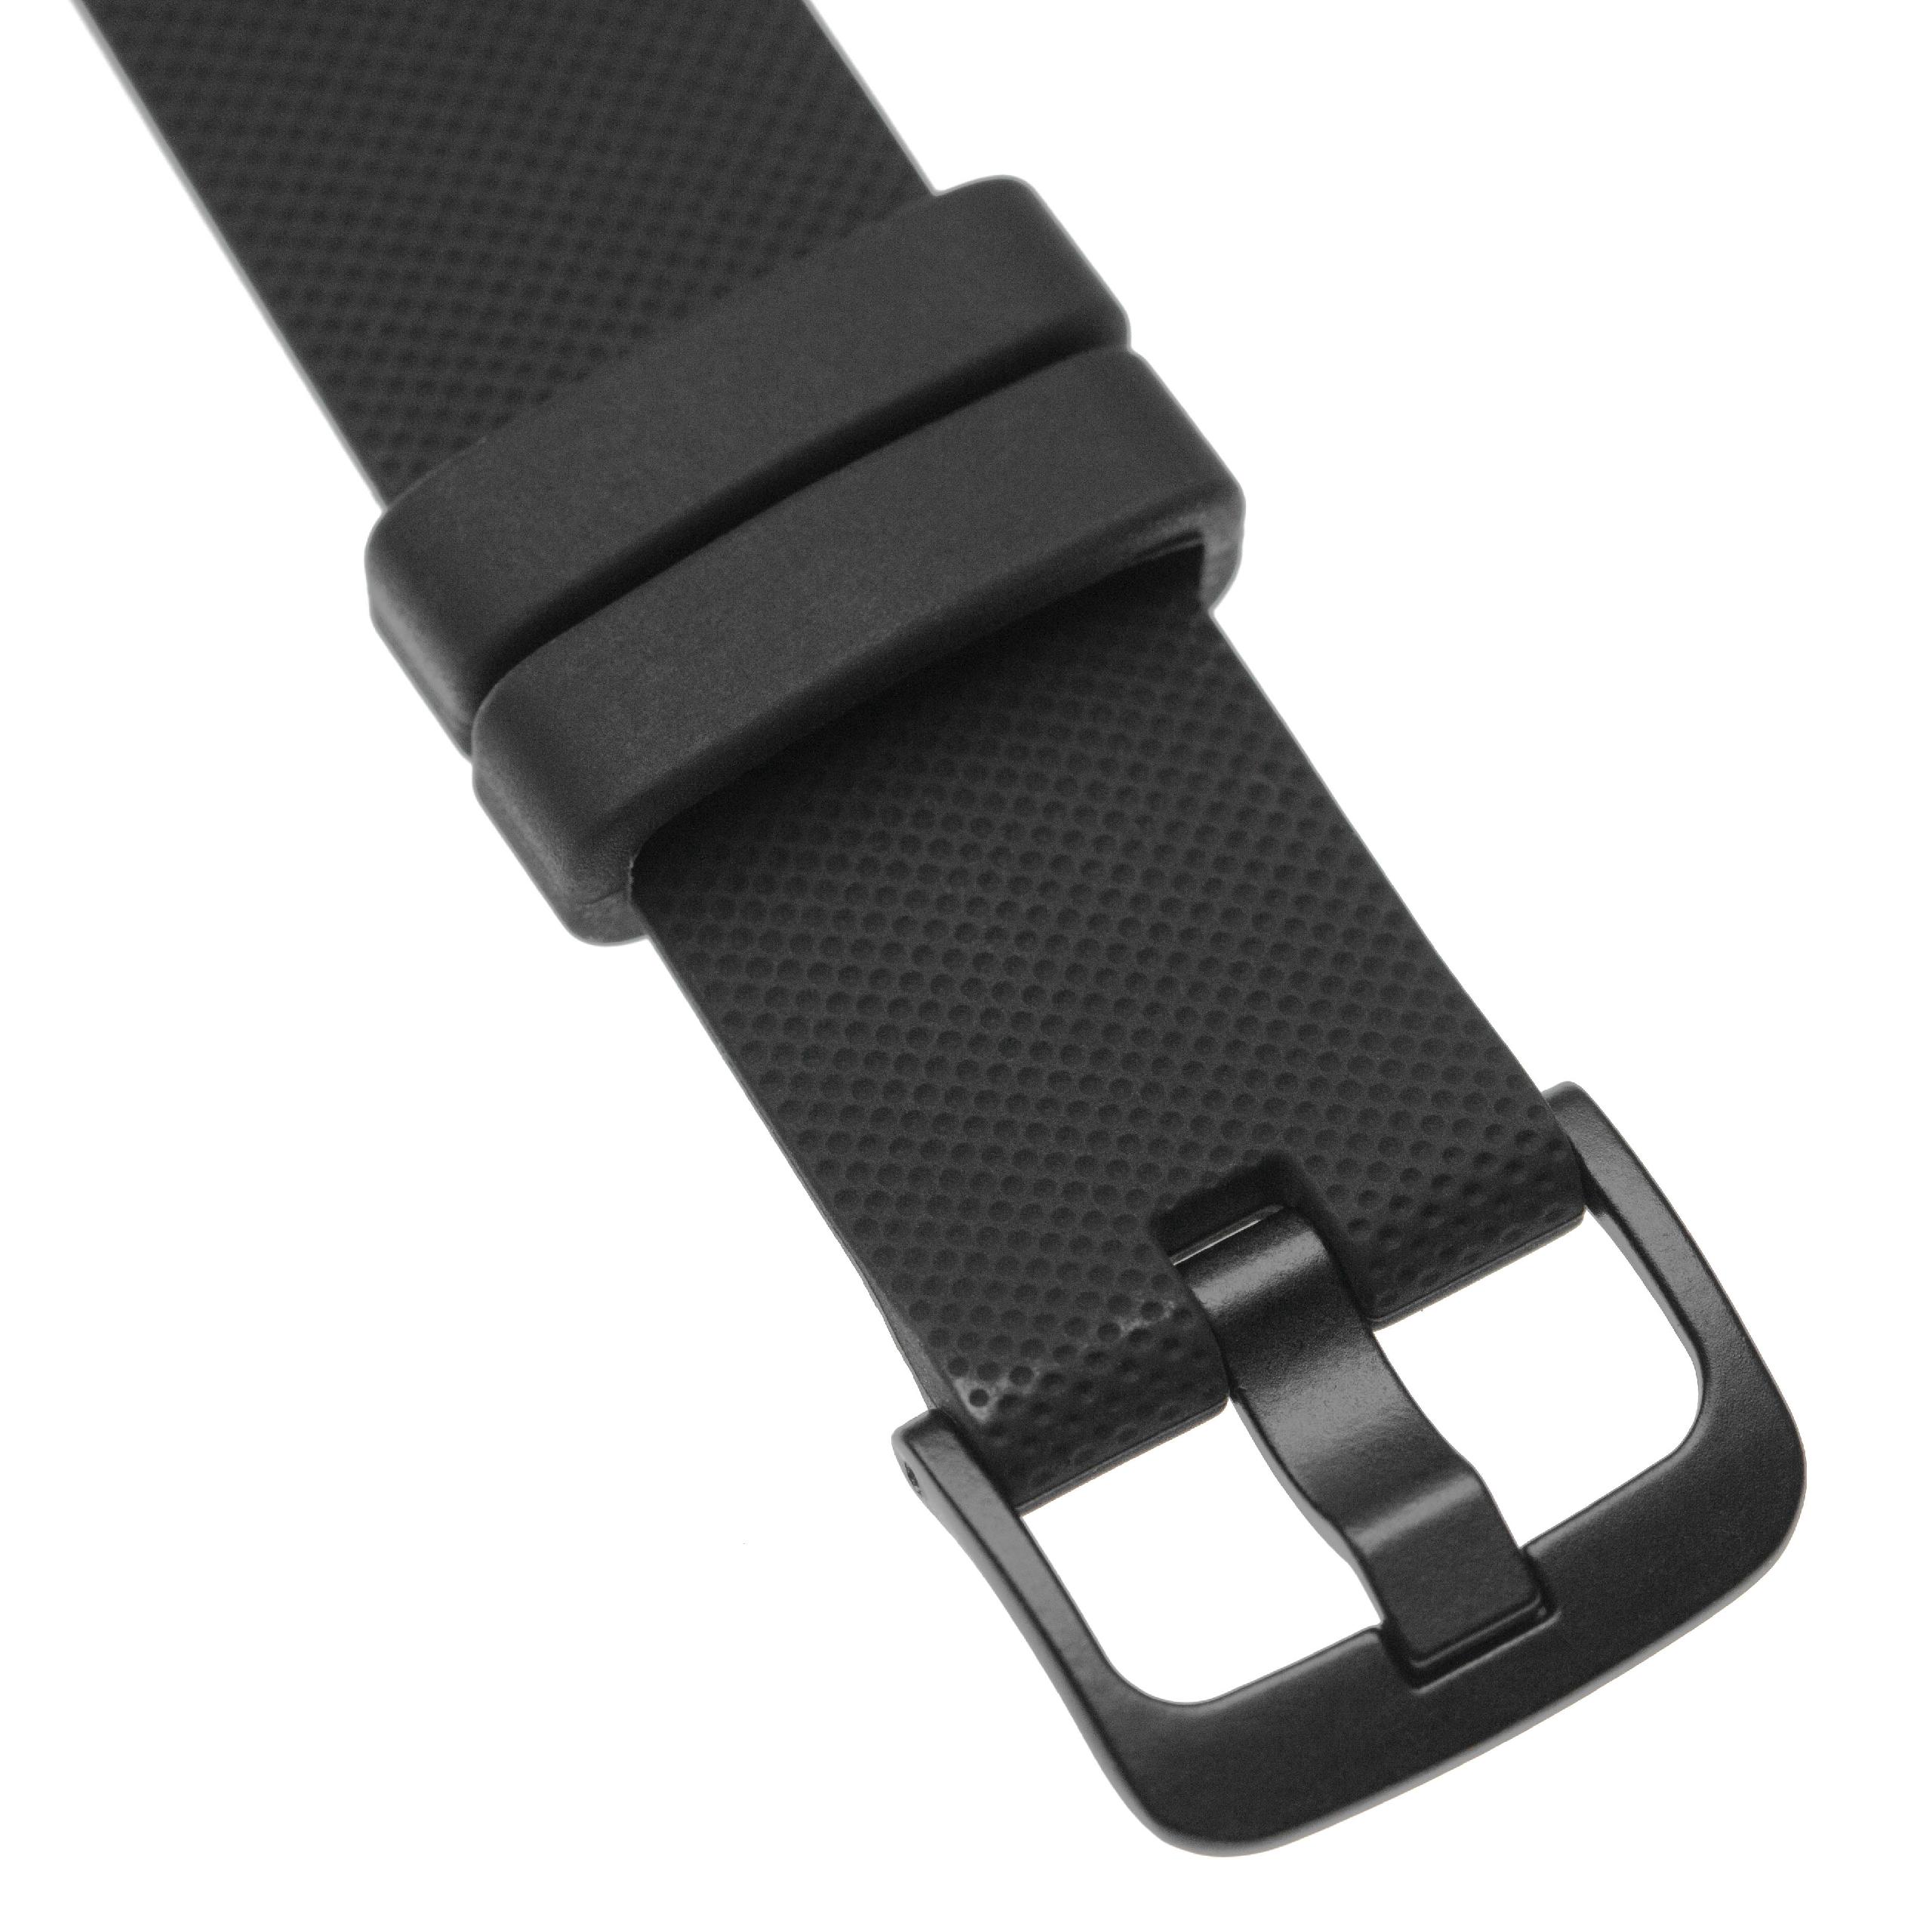 Armband für Garmin Vivomove Smartwatch - 12,1 + 9,2 cm lang, 20mm breit, Silikon, schwarz